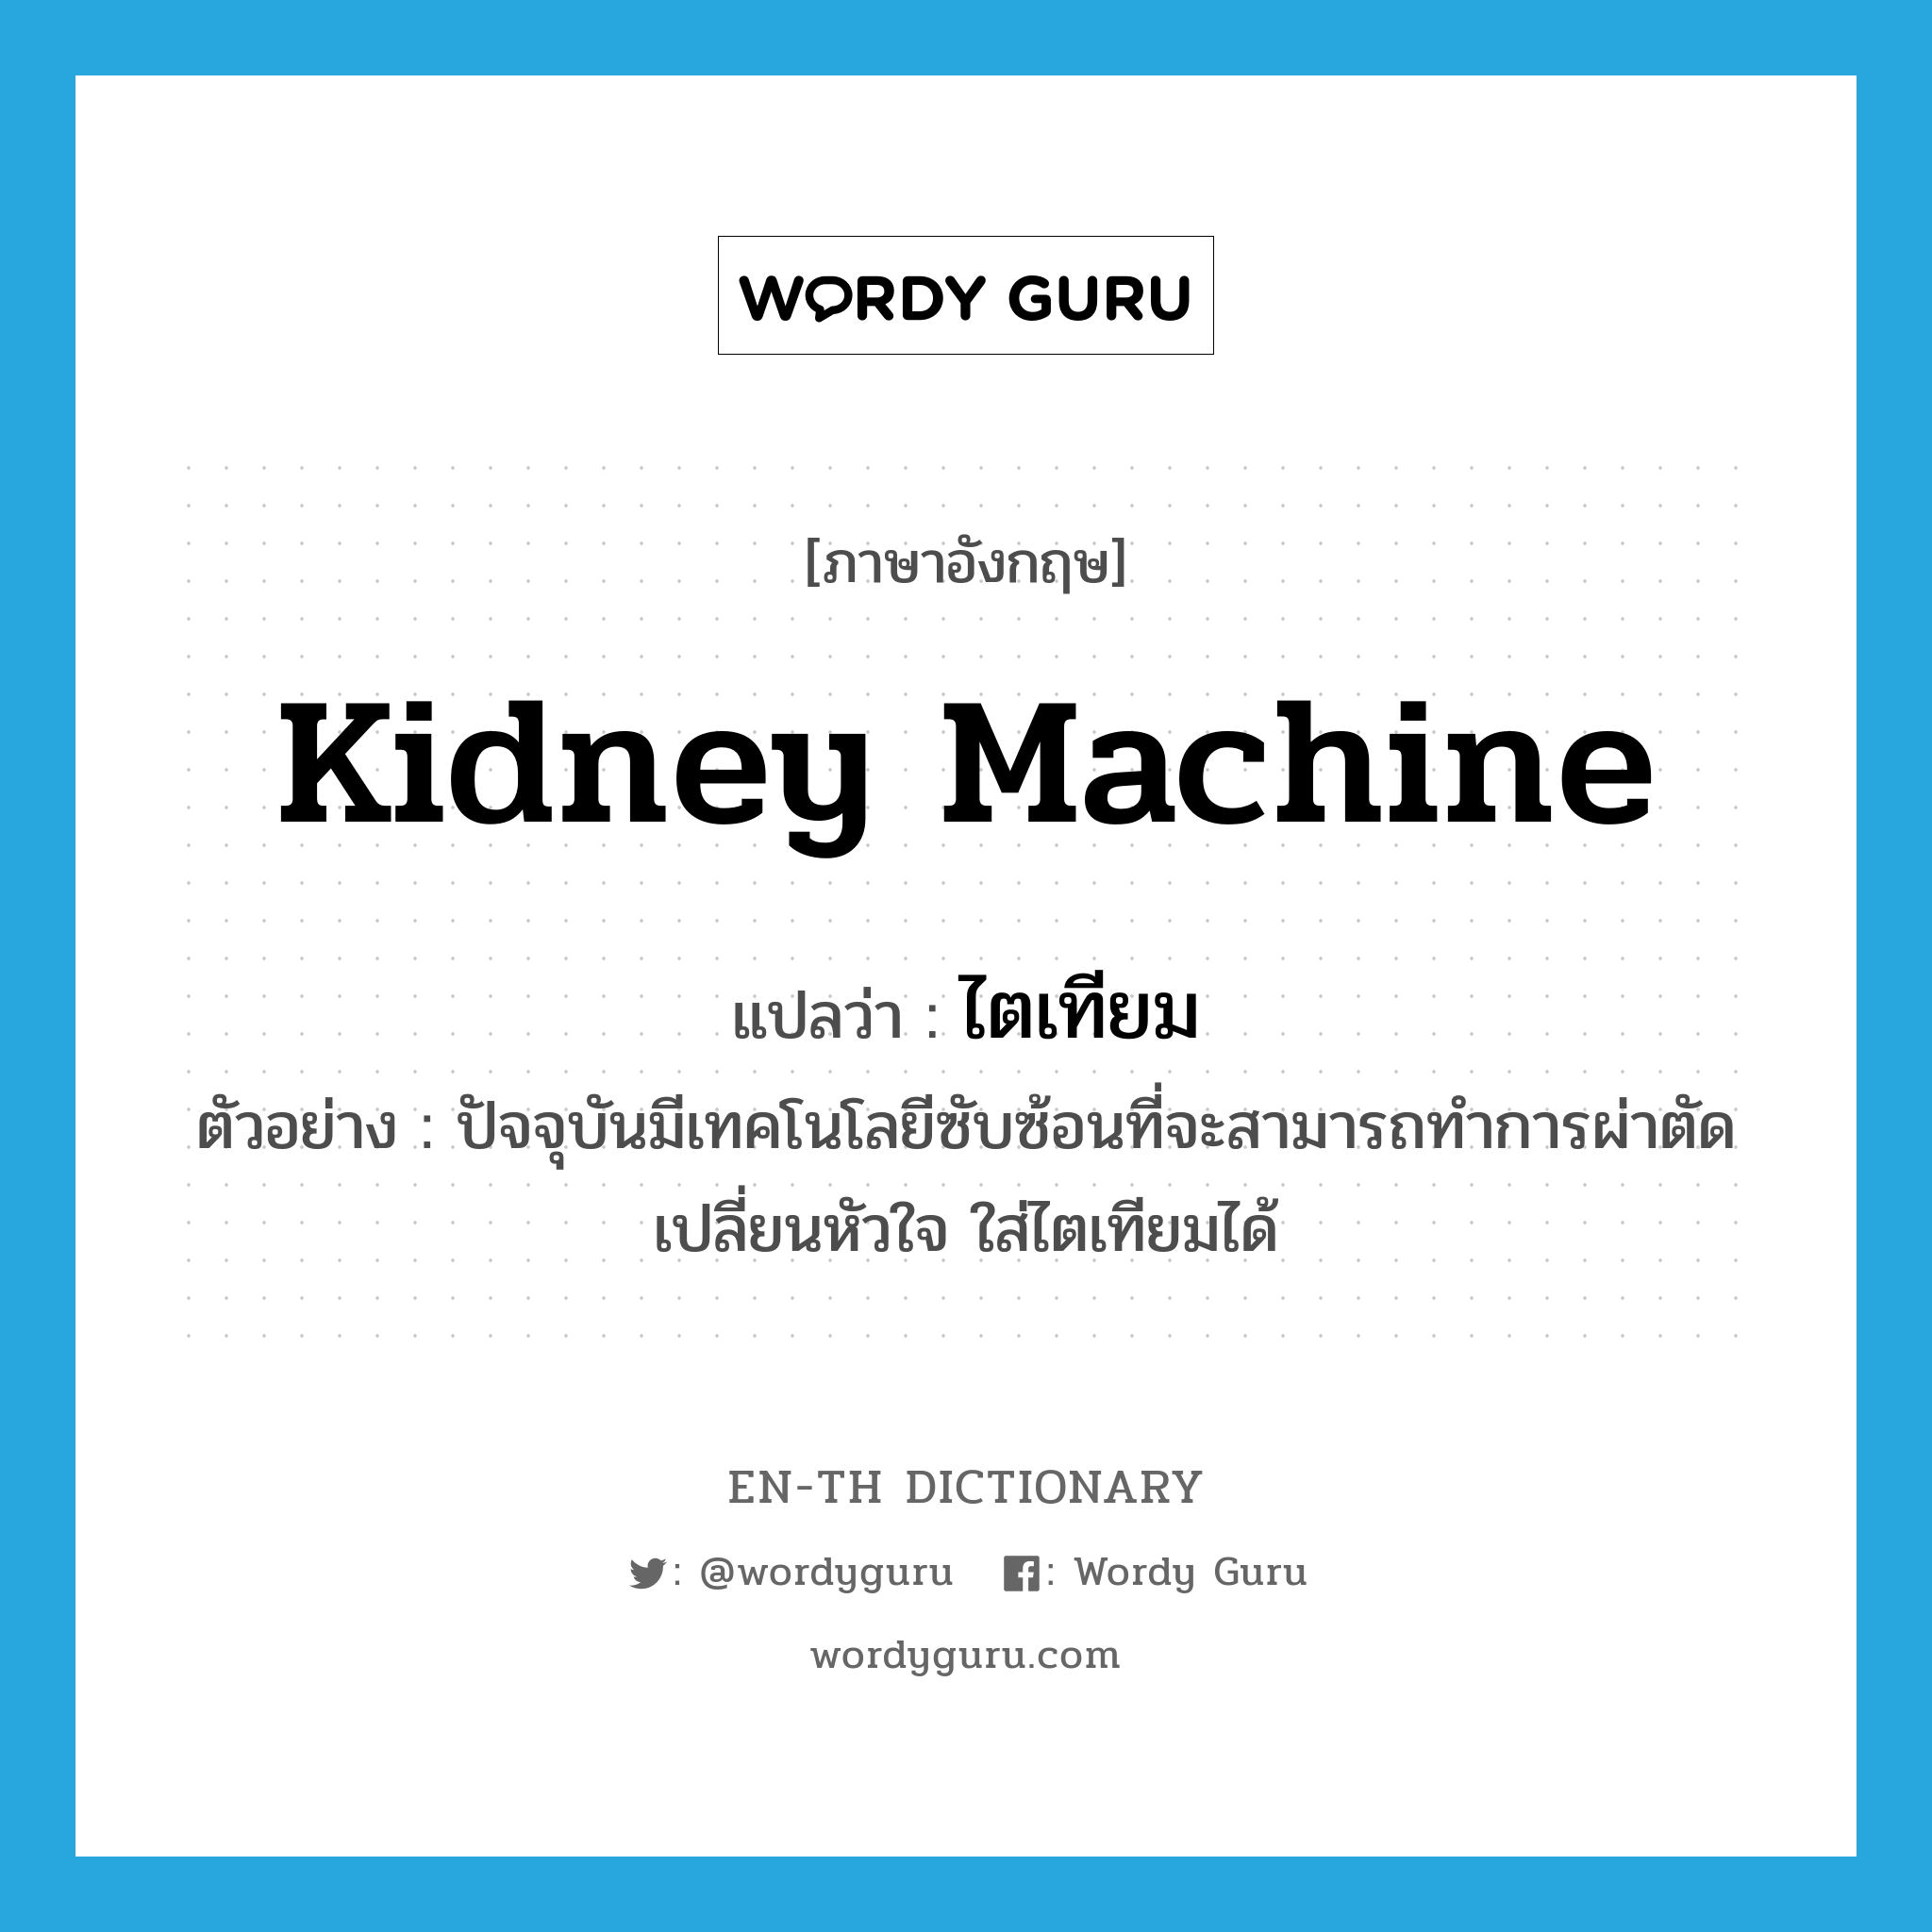 kidney machine แปลว่า?, คำศัพท์ภาษาอังกฤษ kidney machine แปลว่า ไตเทียม ประเภท N ตัวอย่าง ปัจจุบันมีเทคโนโลยีซับซ้อนที่จะสามารถทำการผ่าตัดเปลี่ยนหัวใจ ใส่ไตเทียมได้ หมวด N